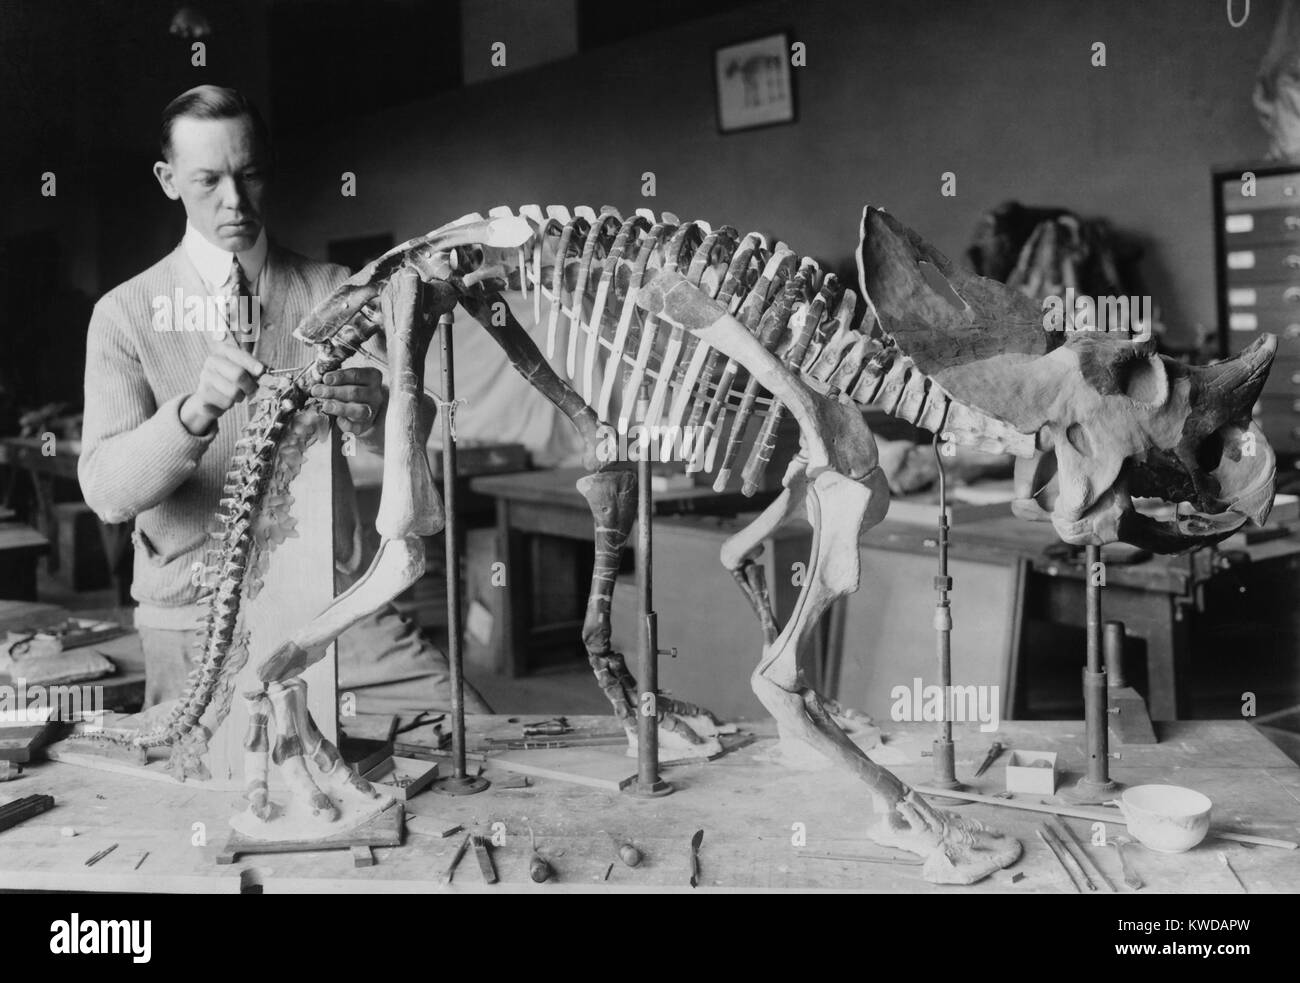 Norman Ross, la préparation d'un squelette pour bébé Brachyceratops afficher au Smithsonian en 1921. Le fossile de dinosaure a été découvert dans le Montana et vécut soixante-dix ou quatre-vingts millions d'années (BSLOC   2016 10 23) Banque D'Images